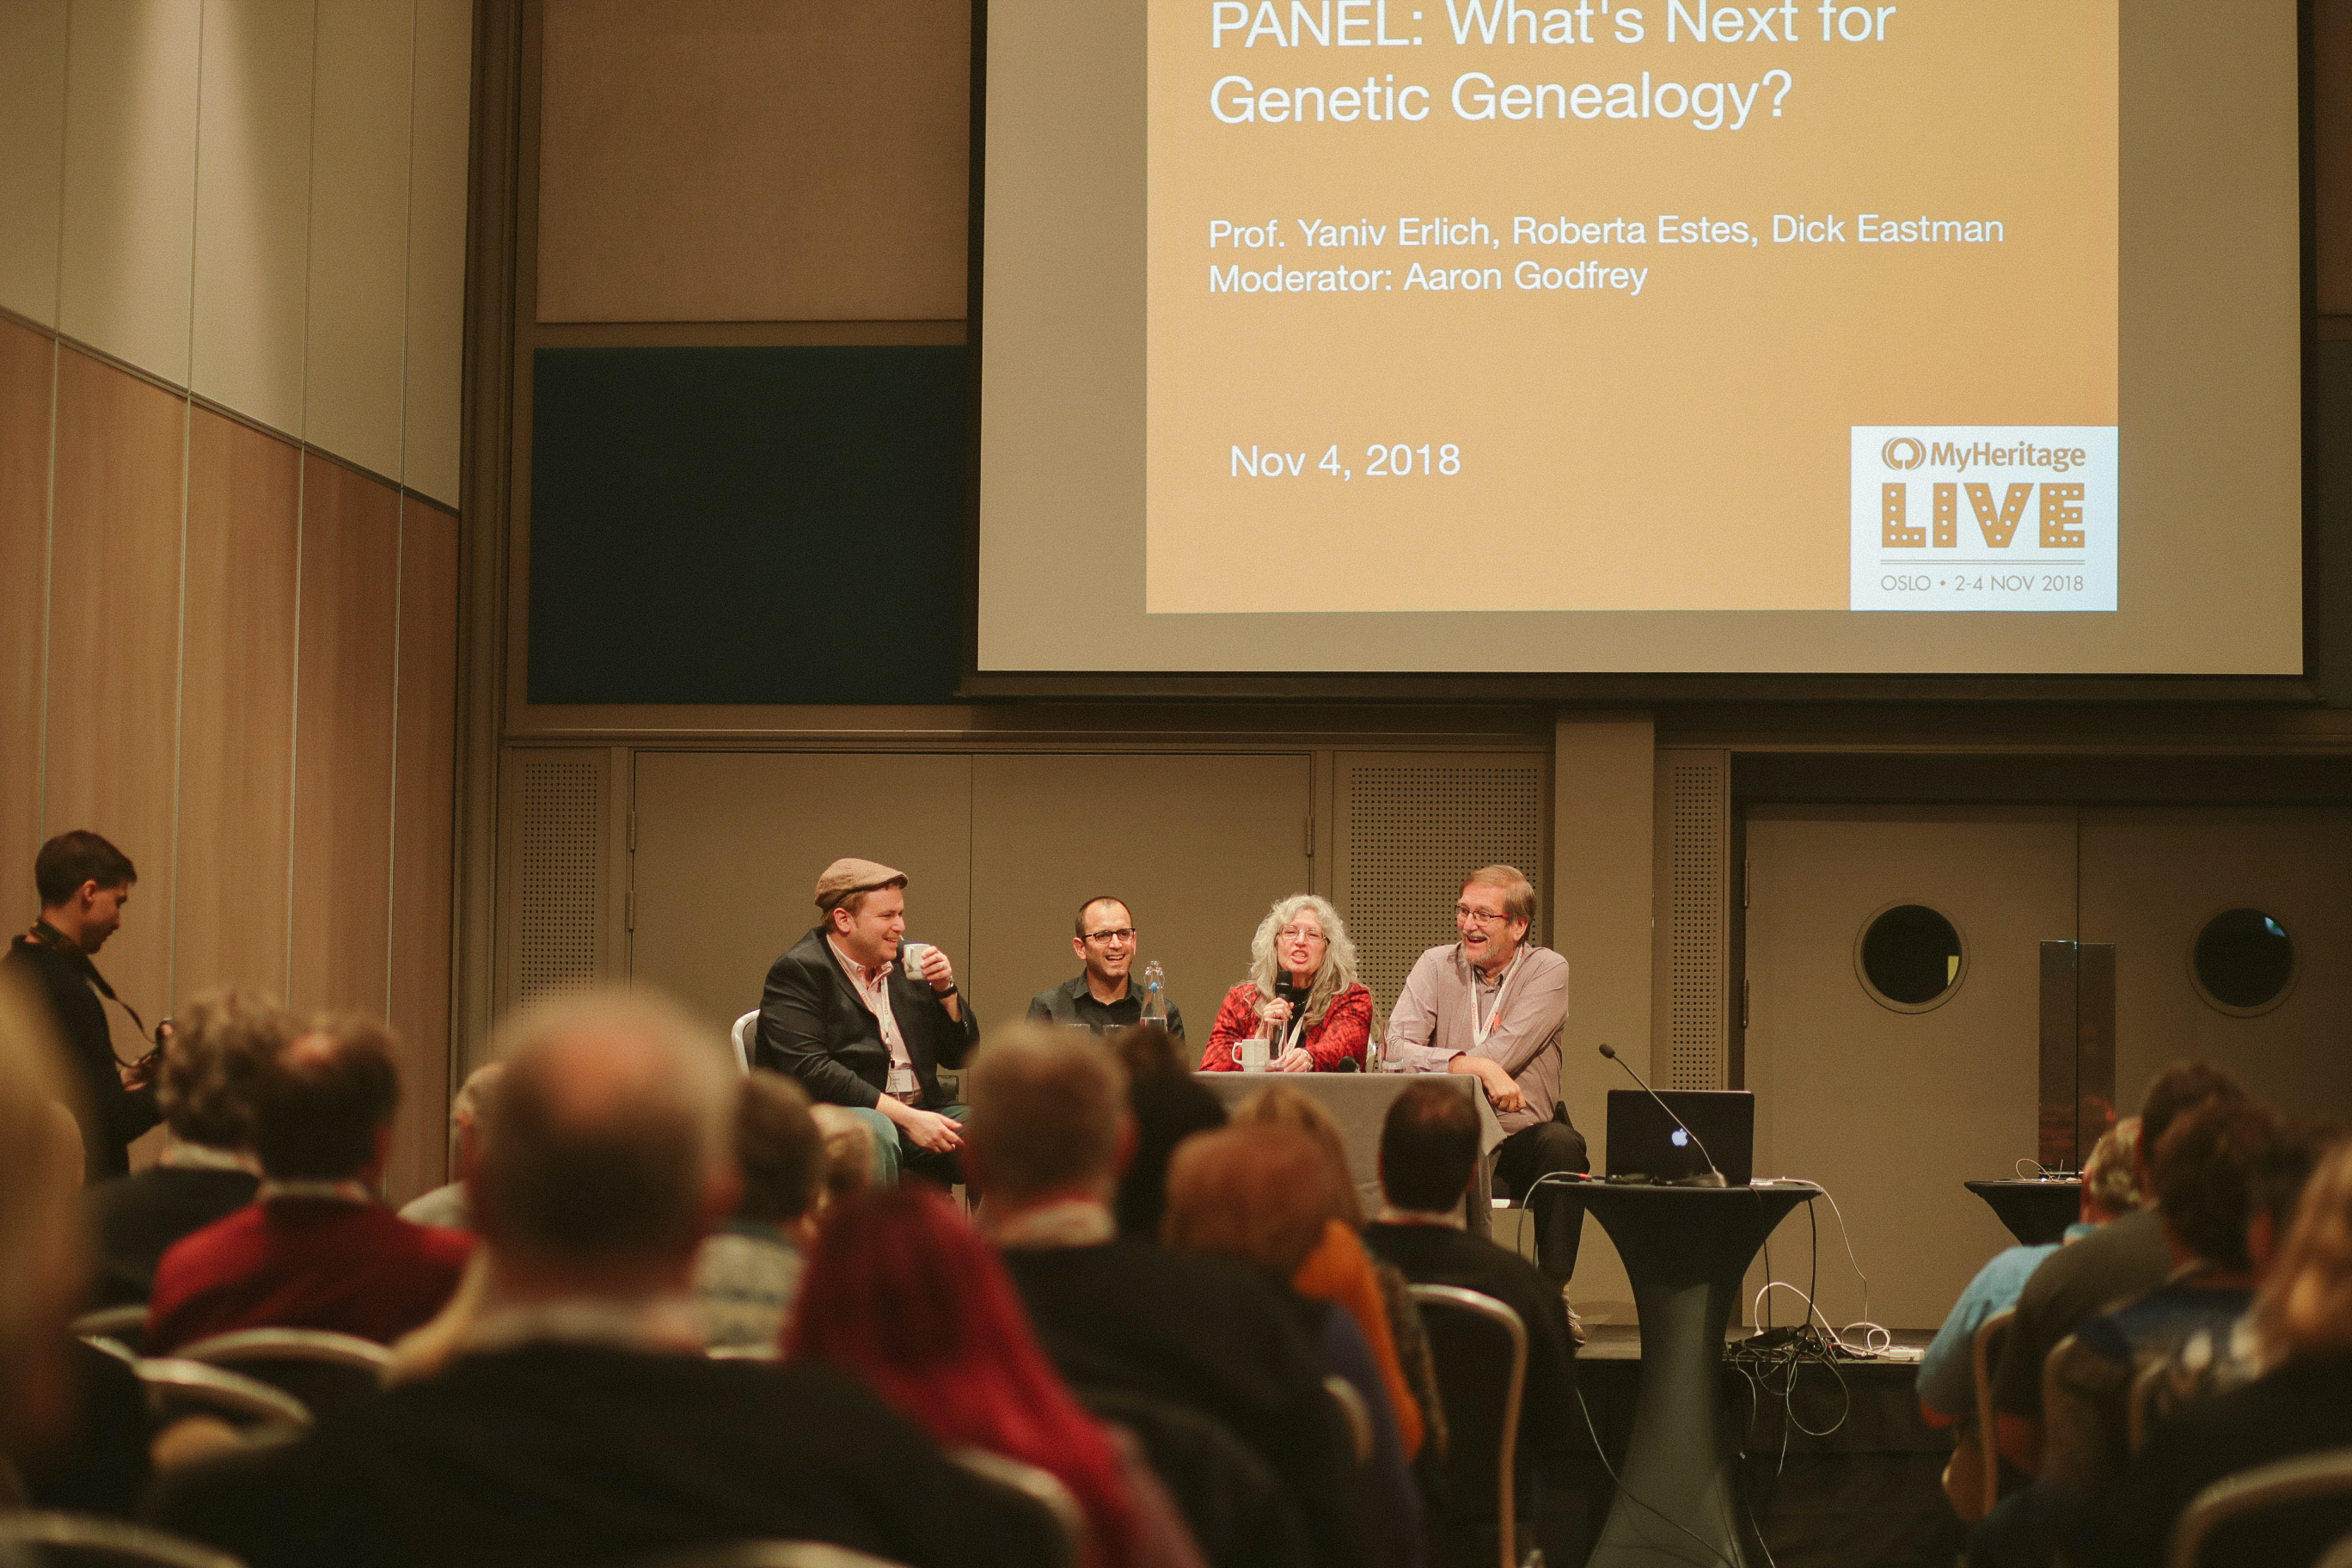 Panel med emnet “Hvad er det næste inden for genetisk slægtsforskning” med Aaron Godfrey, Dr. Yaniv Erlich, Roberta Estes og Dick Eastman